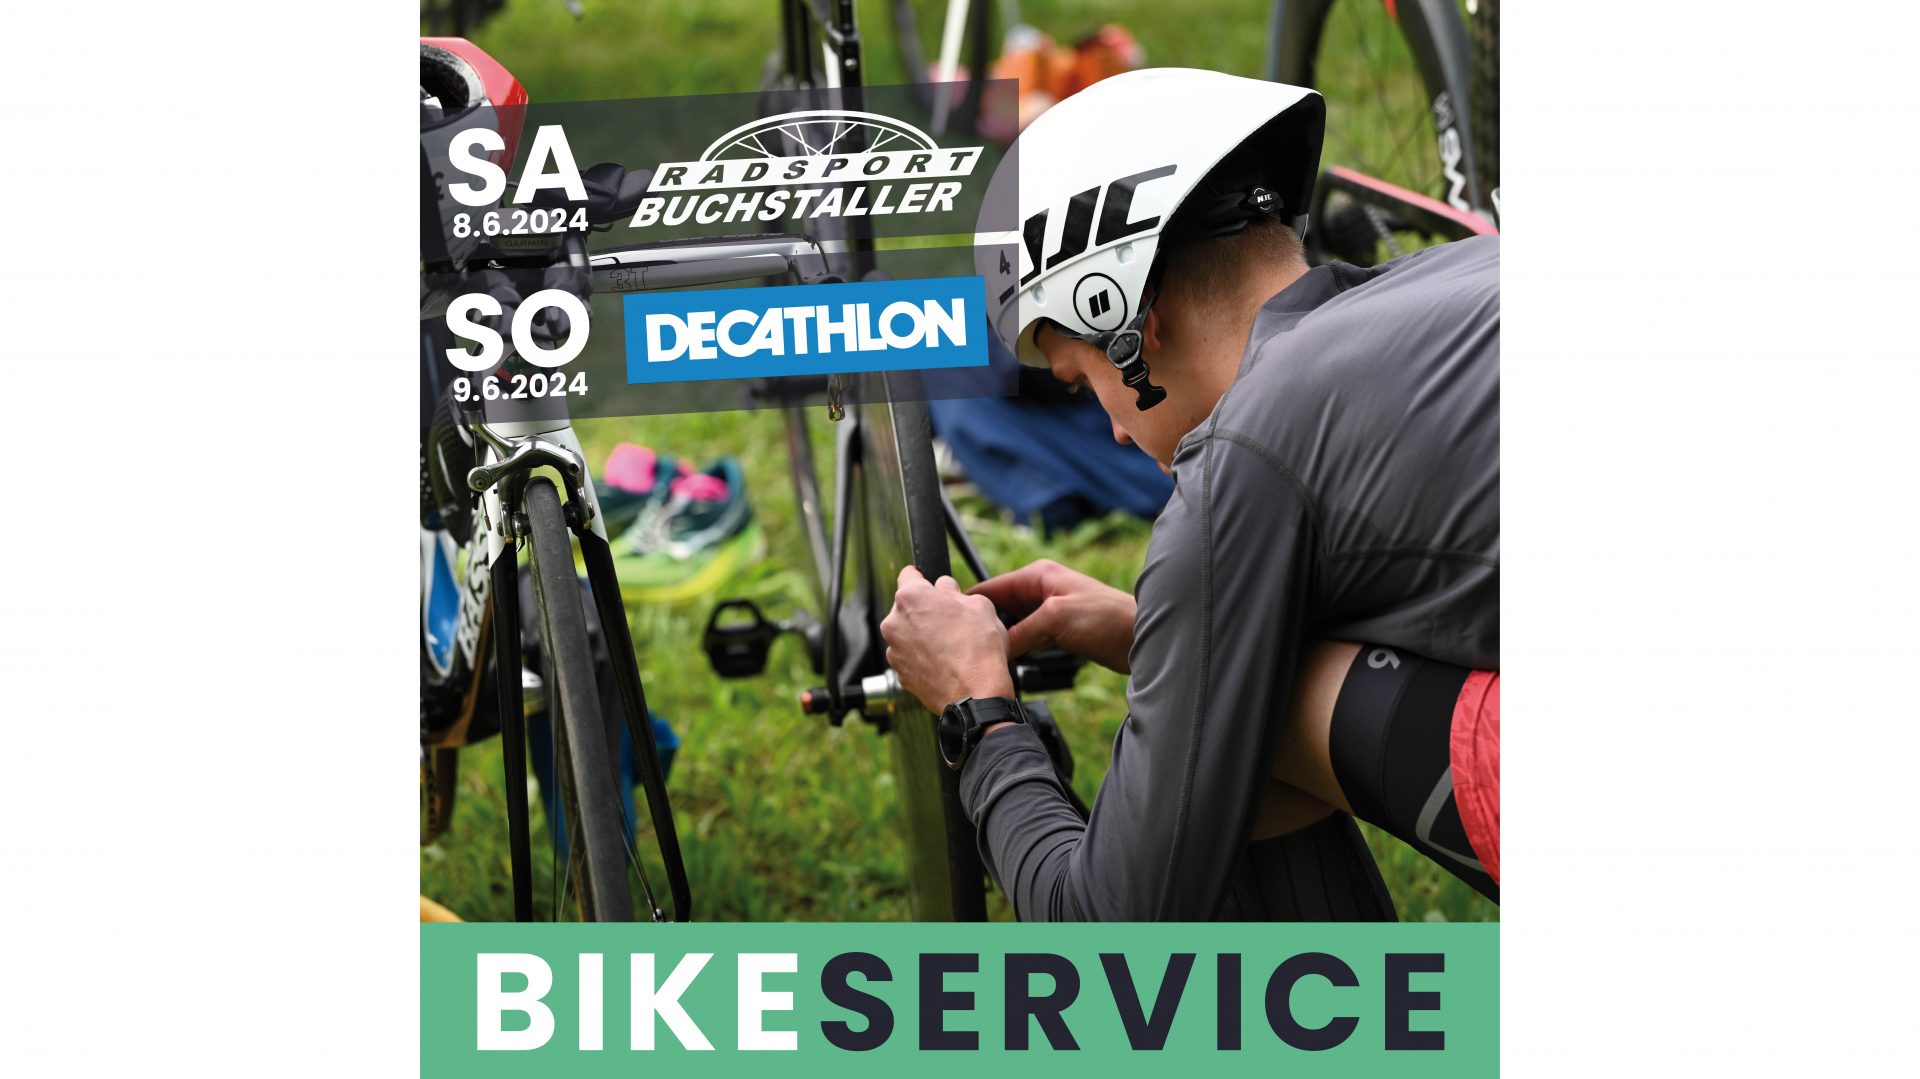 Bike-Service Radsport Buchstaller & Decathlon Ingolstadt